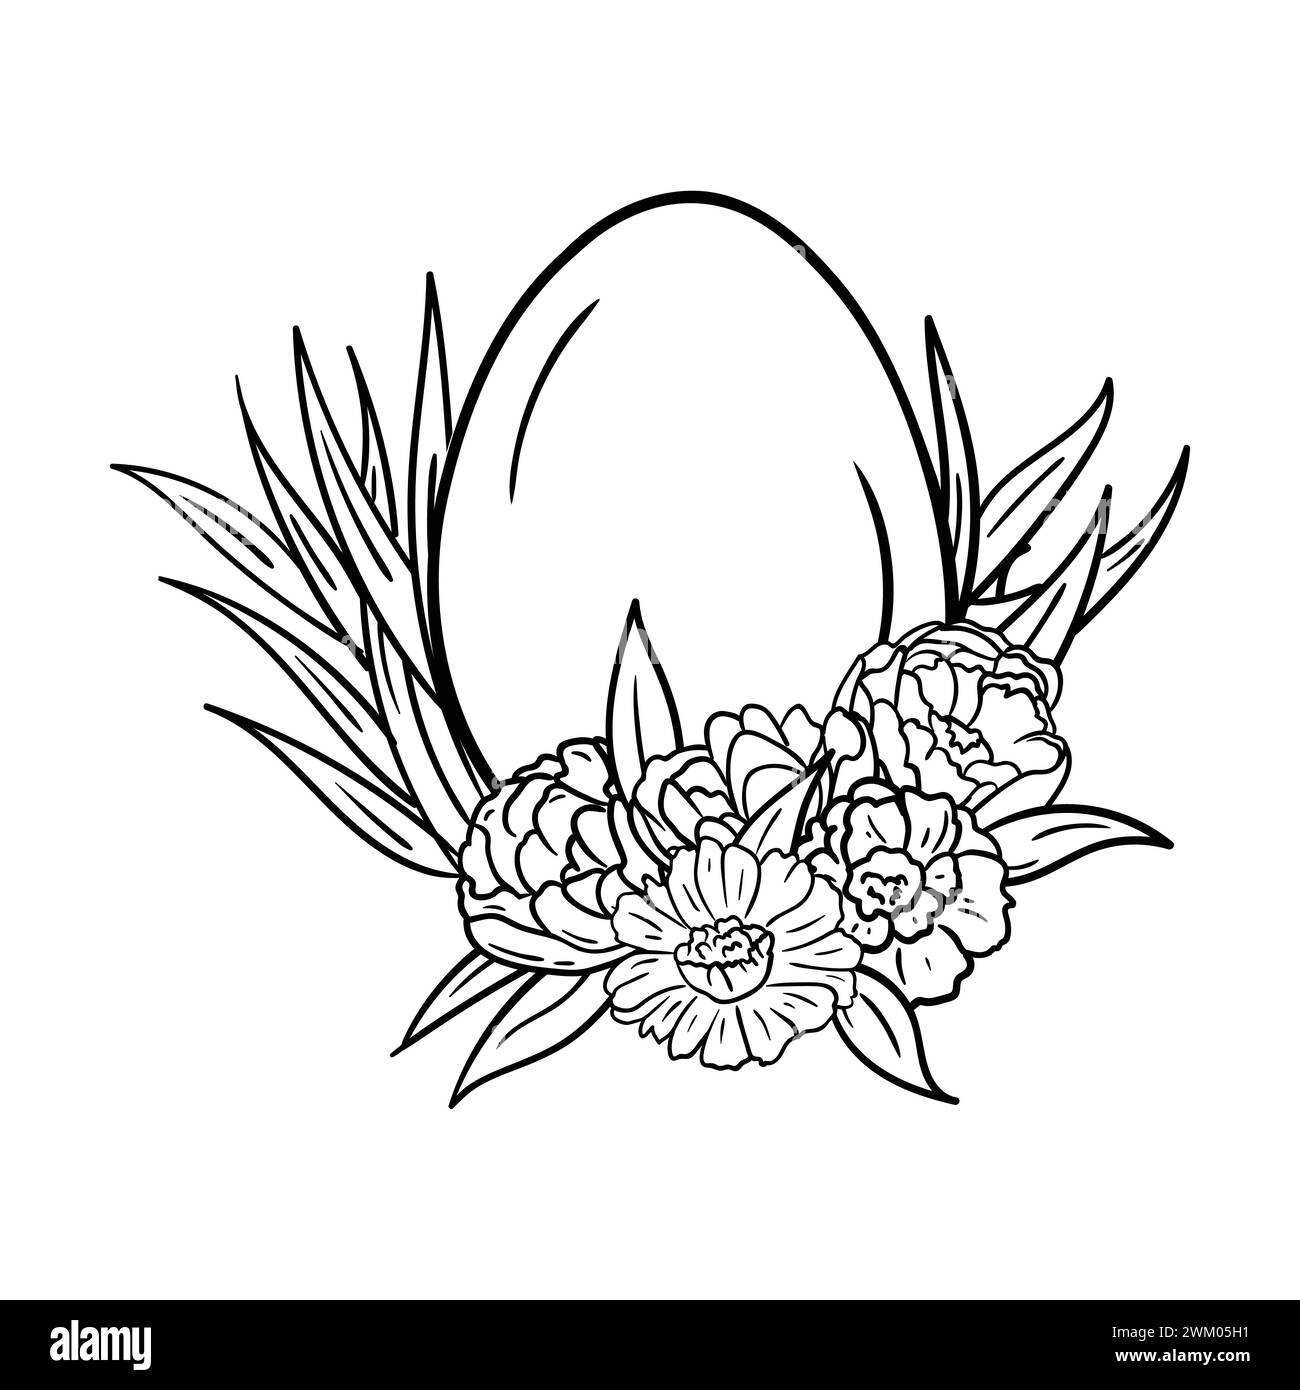 Pagina da colorare dell'uovo di Pasqua in erba e fiori. Immagine in bianco e nero. Immagine vettoriale per una cartolina. Illustrazione Vettoriale